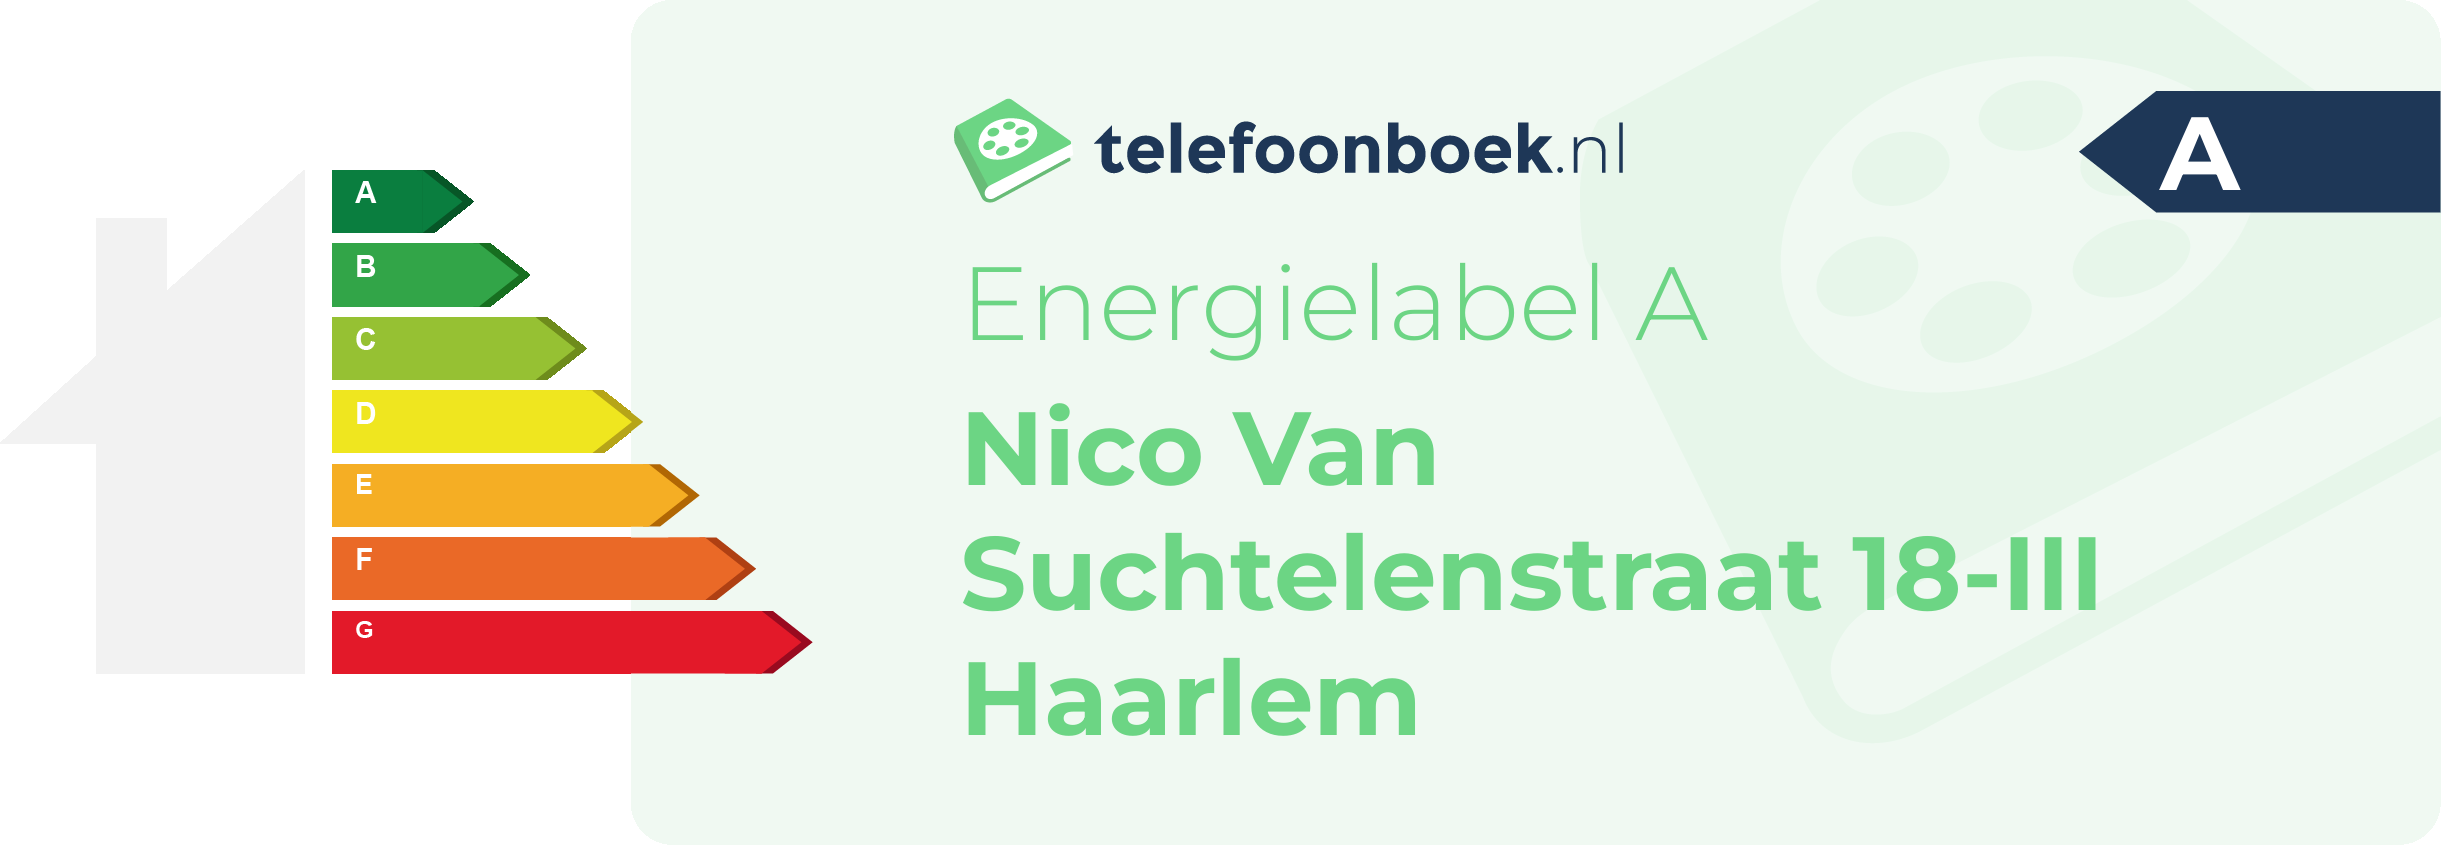 Energielabel Nico Van Suchtelenstraat 18-III Haarlem